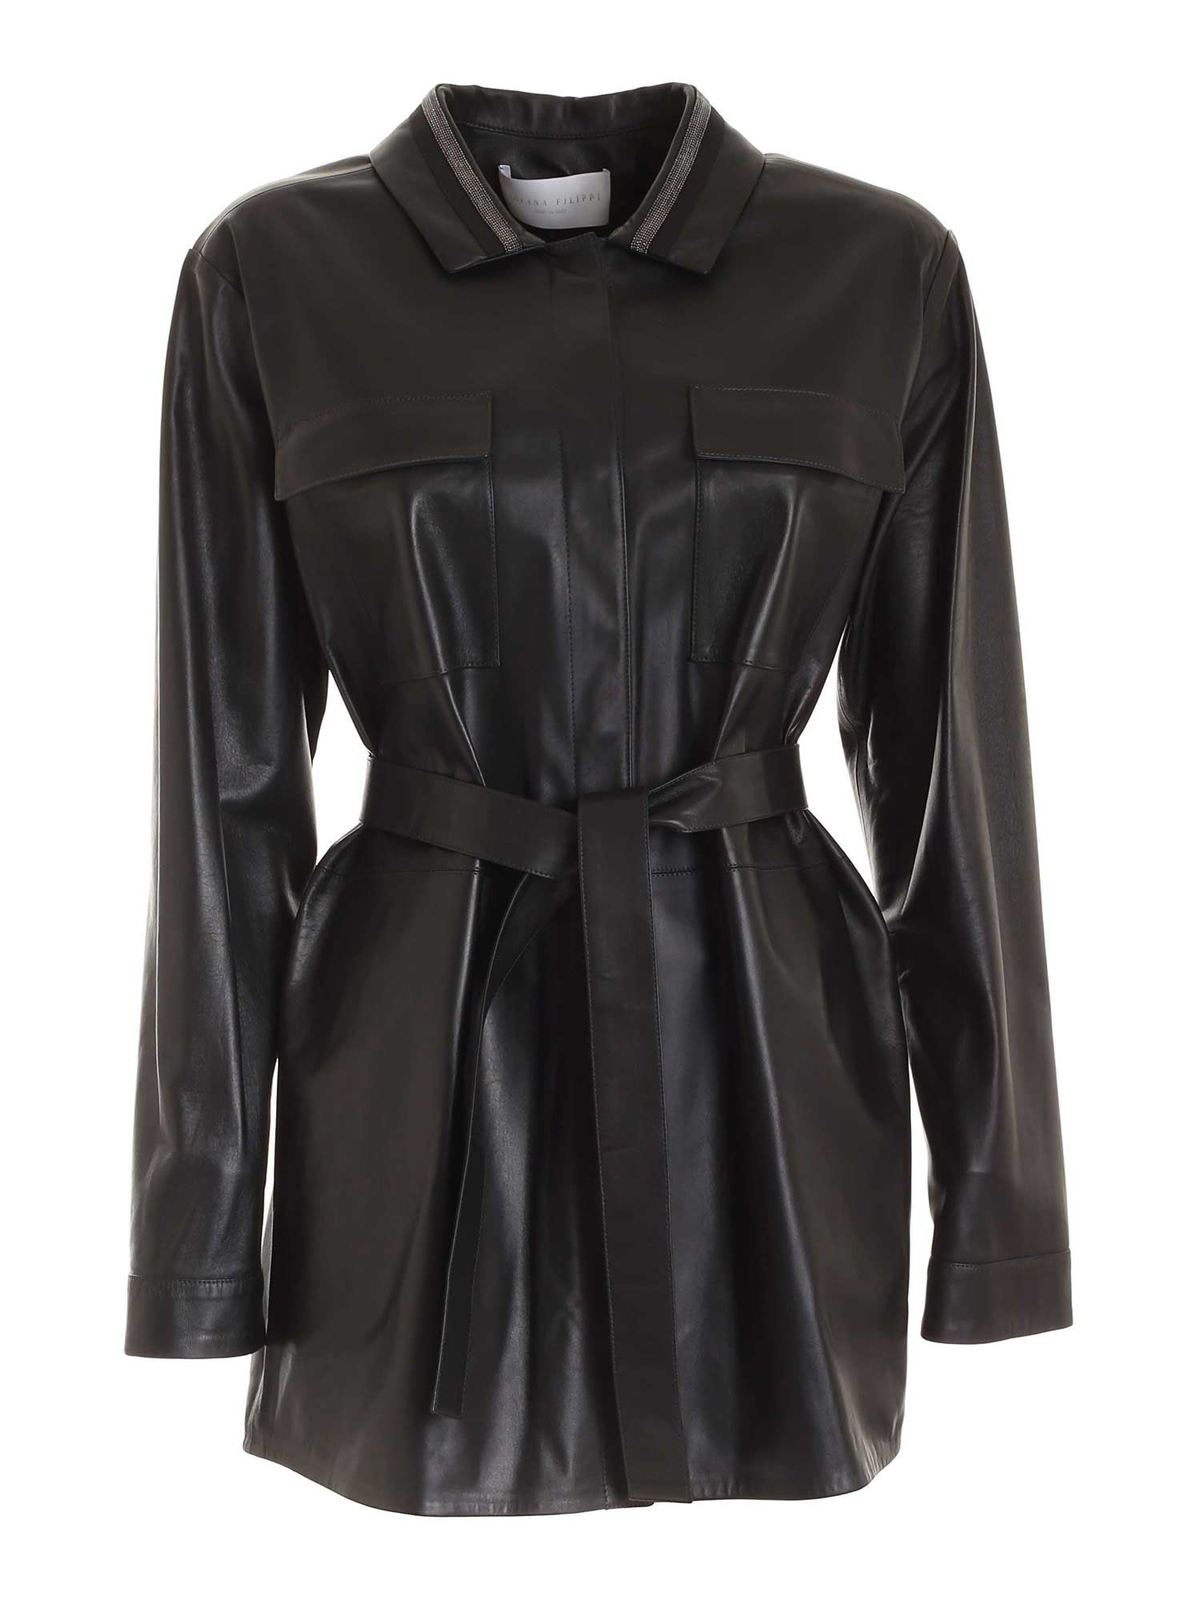 Leather jacket Fabiana Filippi - Leather jacket in black ...